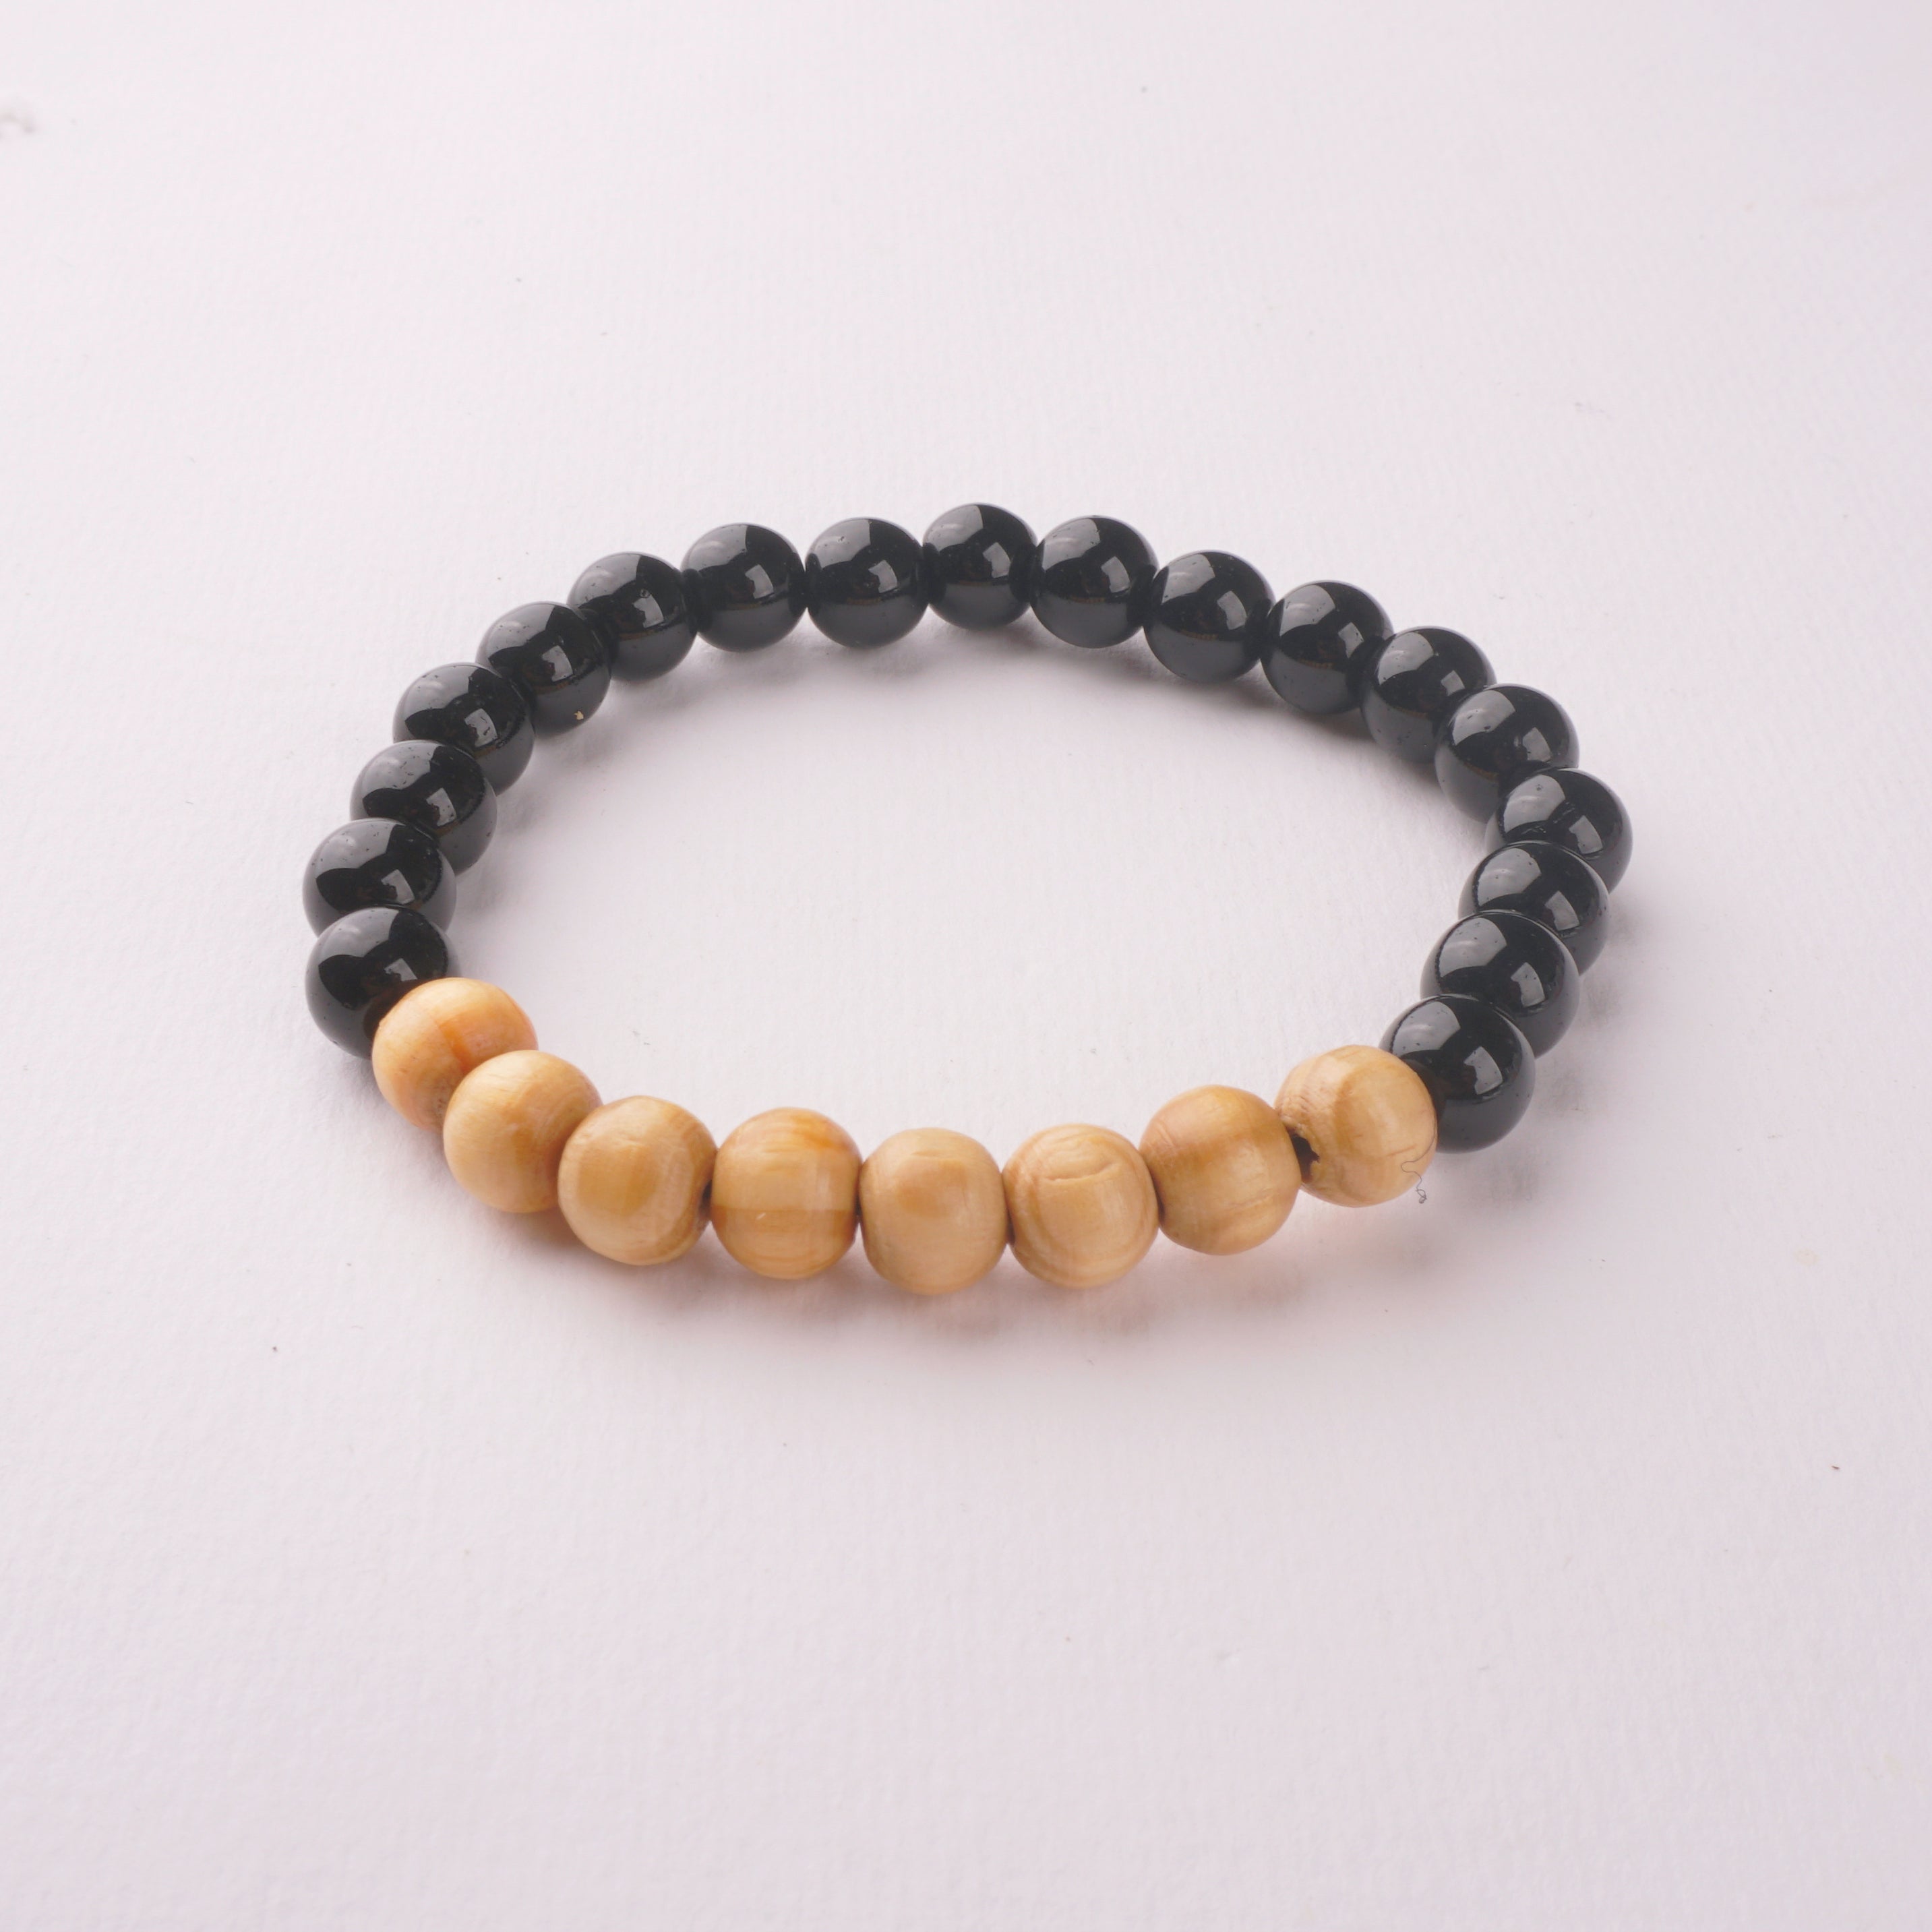 Beads Bracelets for Men & Women